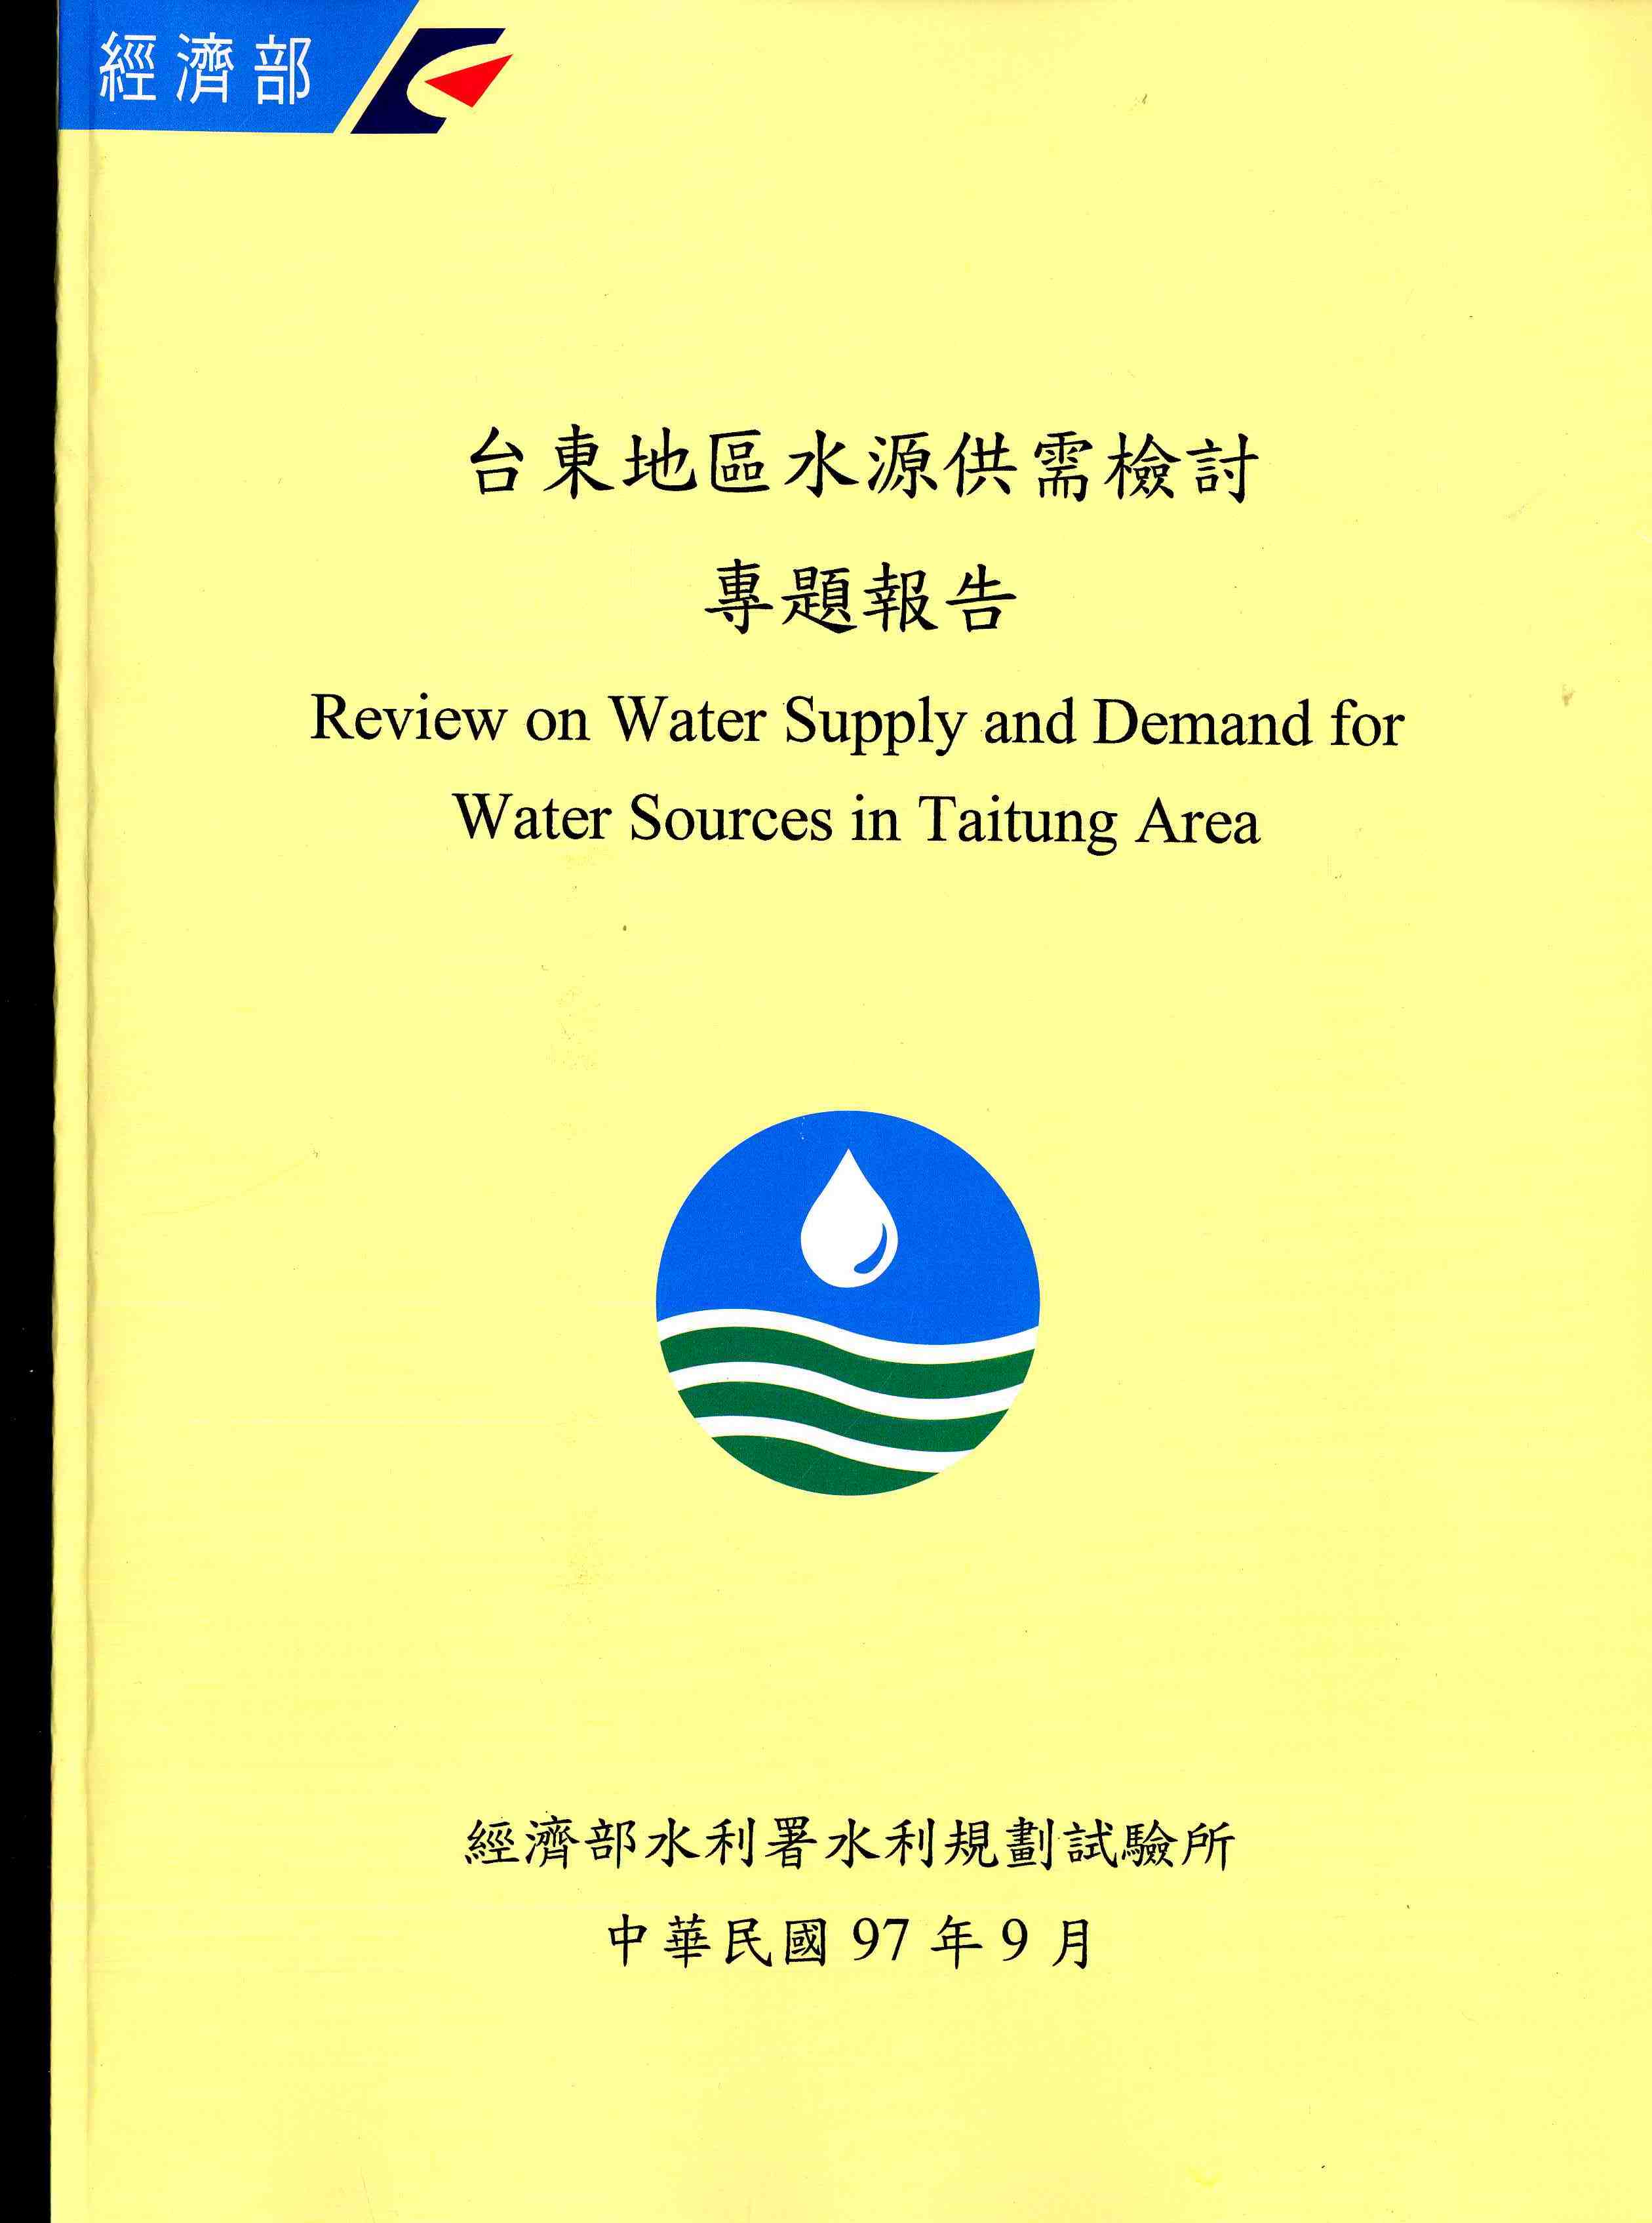 台東地區水資源供需檢討專題報告